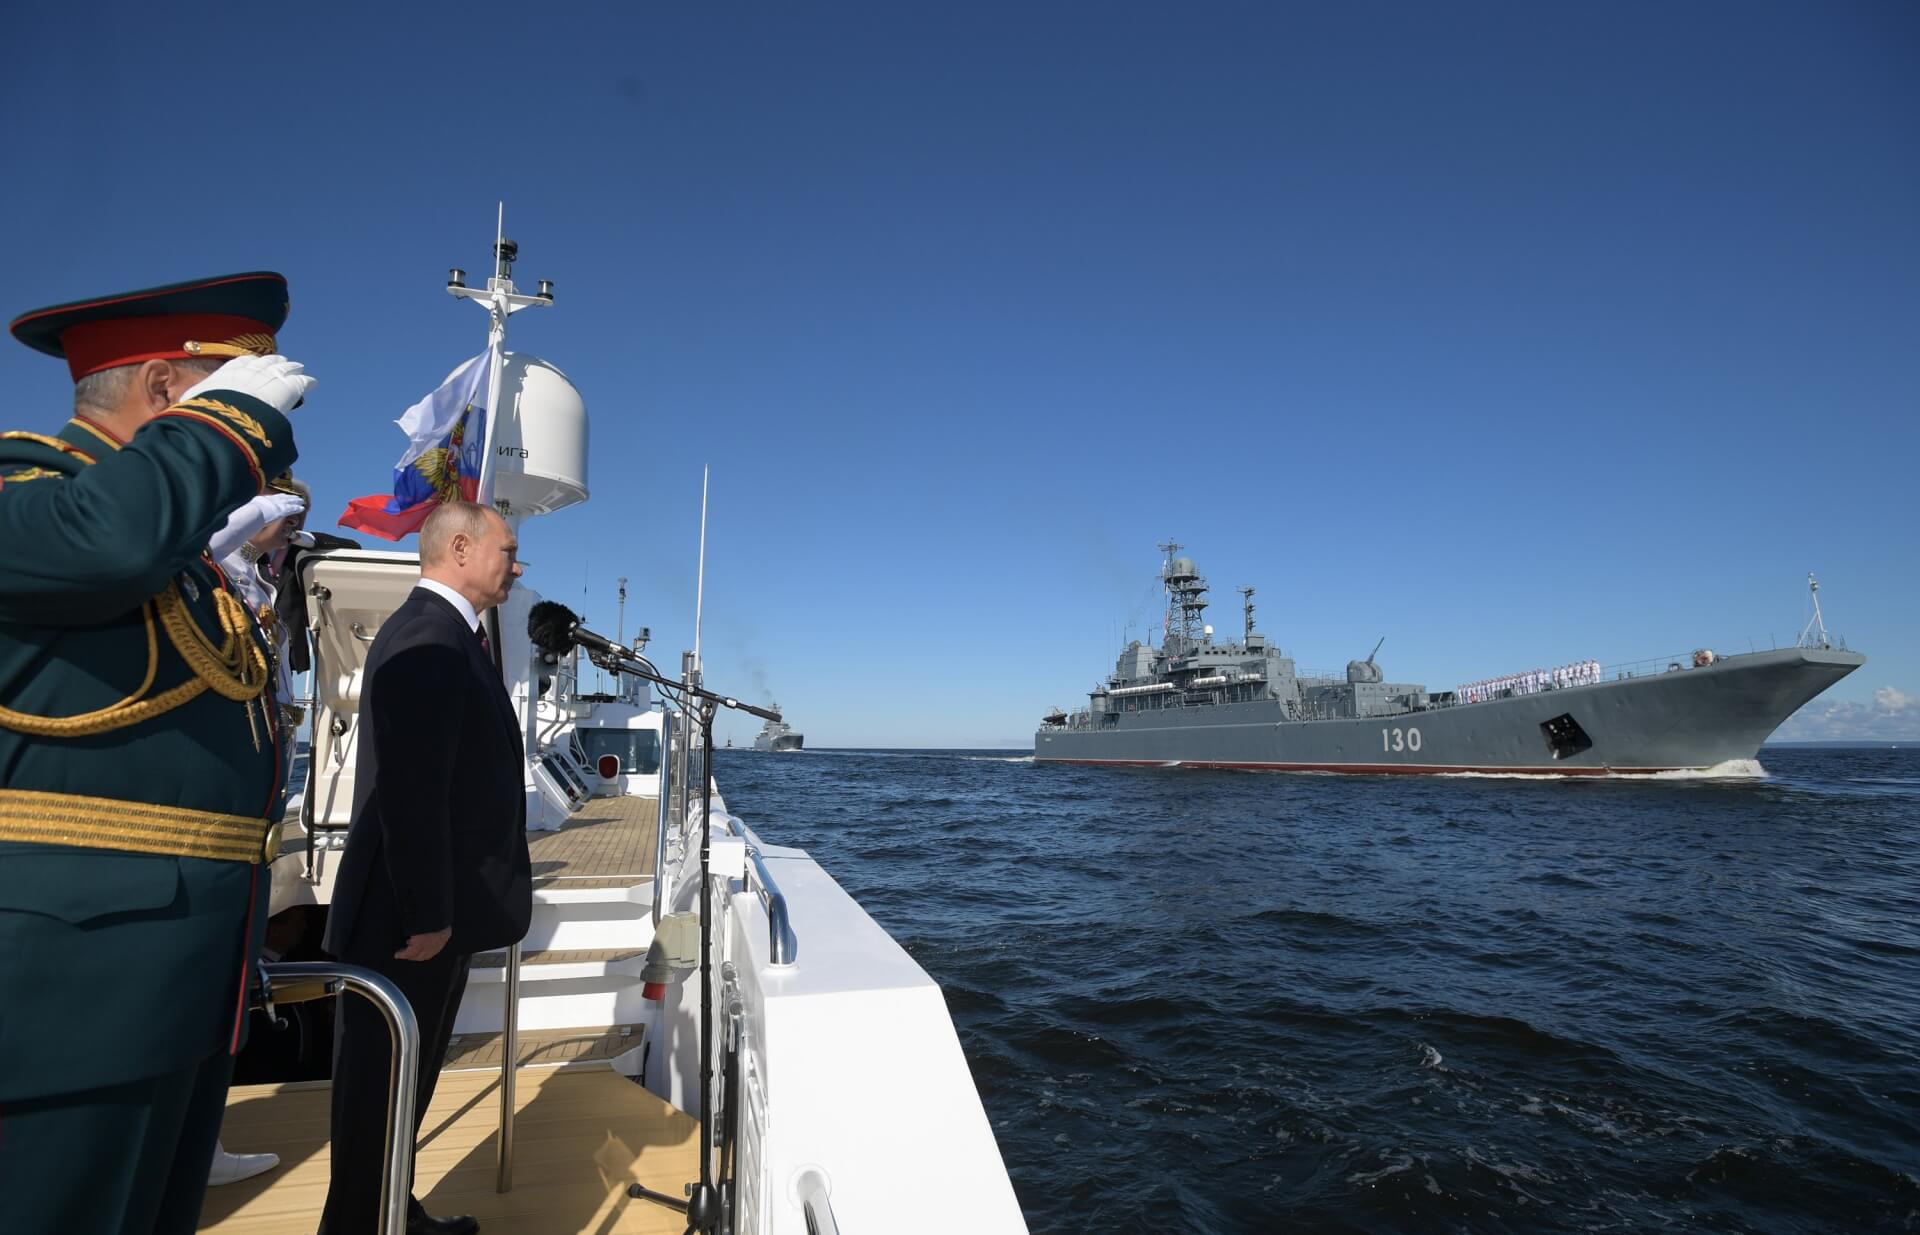 Putin Warns of “Lethal” Strikes Against Enemies At Warship Parade